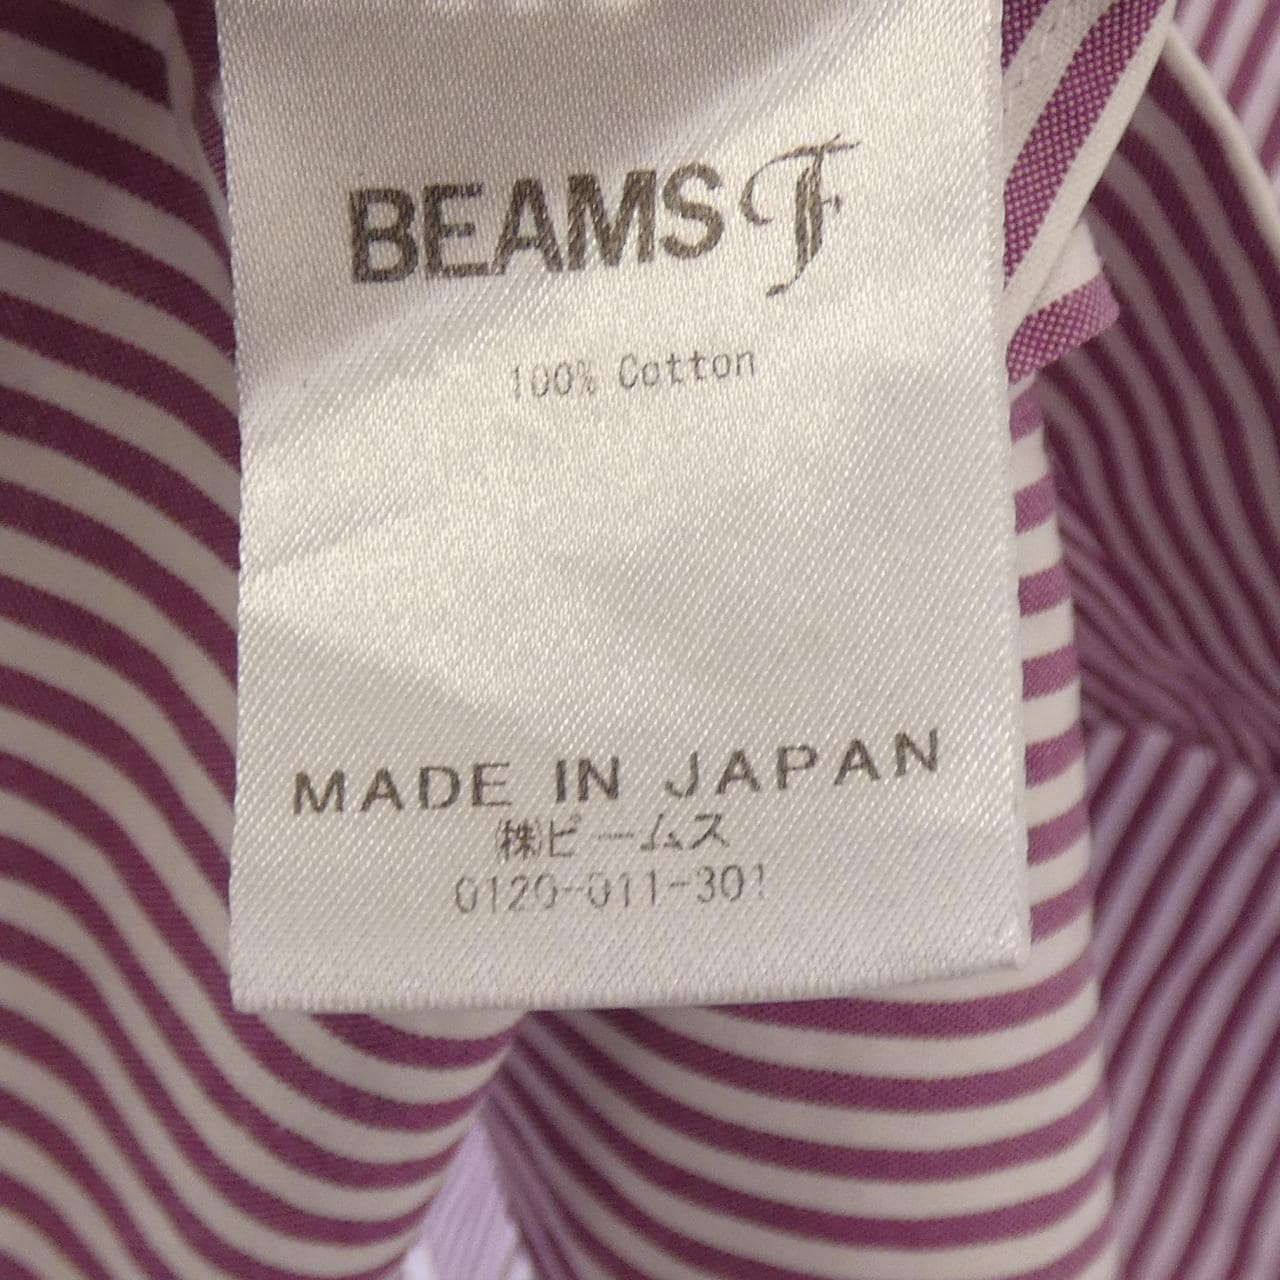 BEAMS F shirt